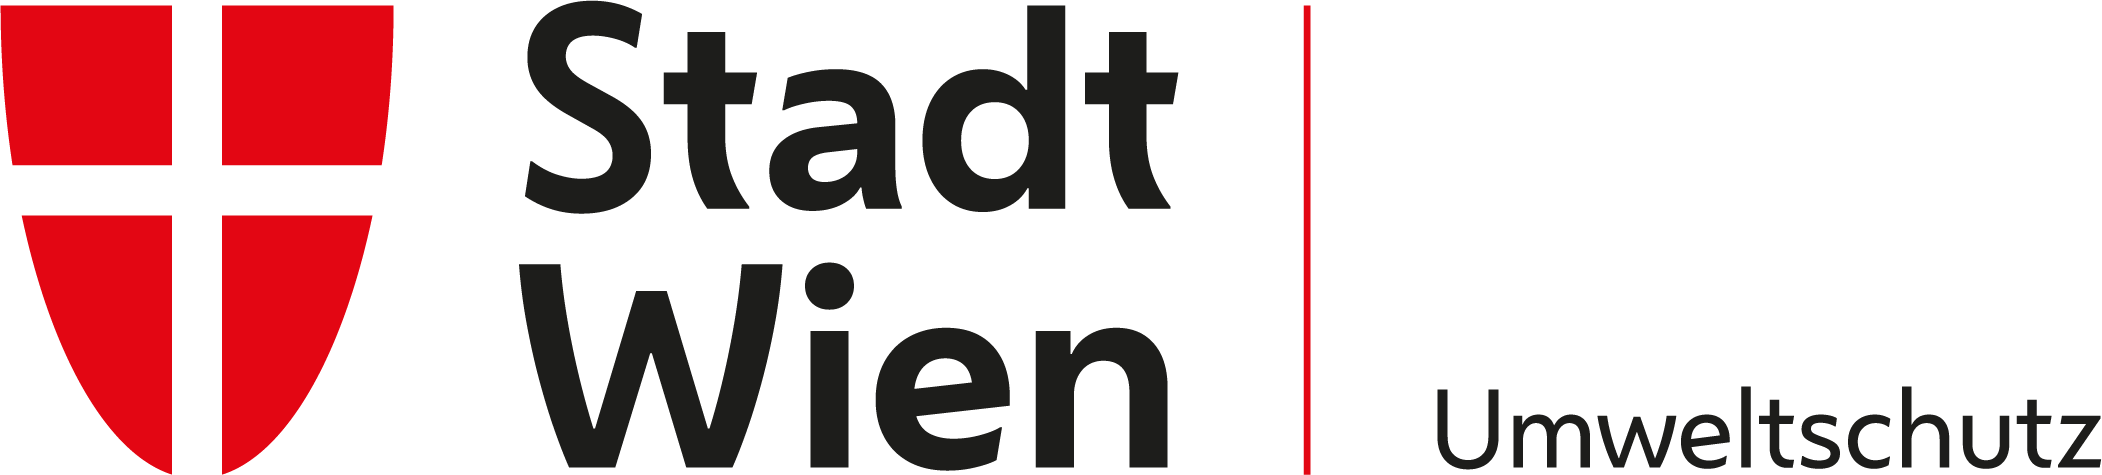 Logo Stadt Wien-Umweltschutz